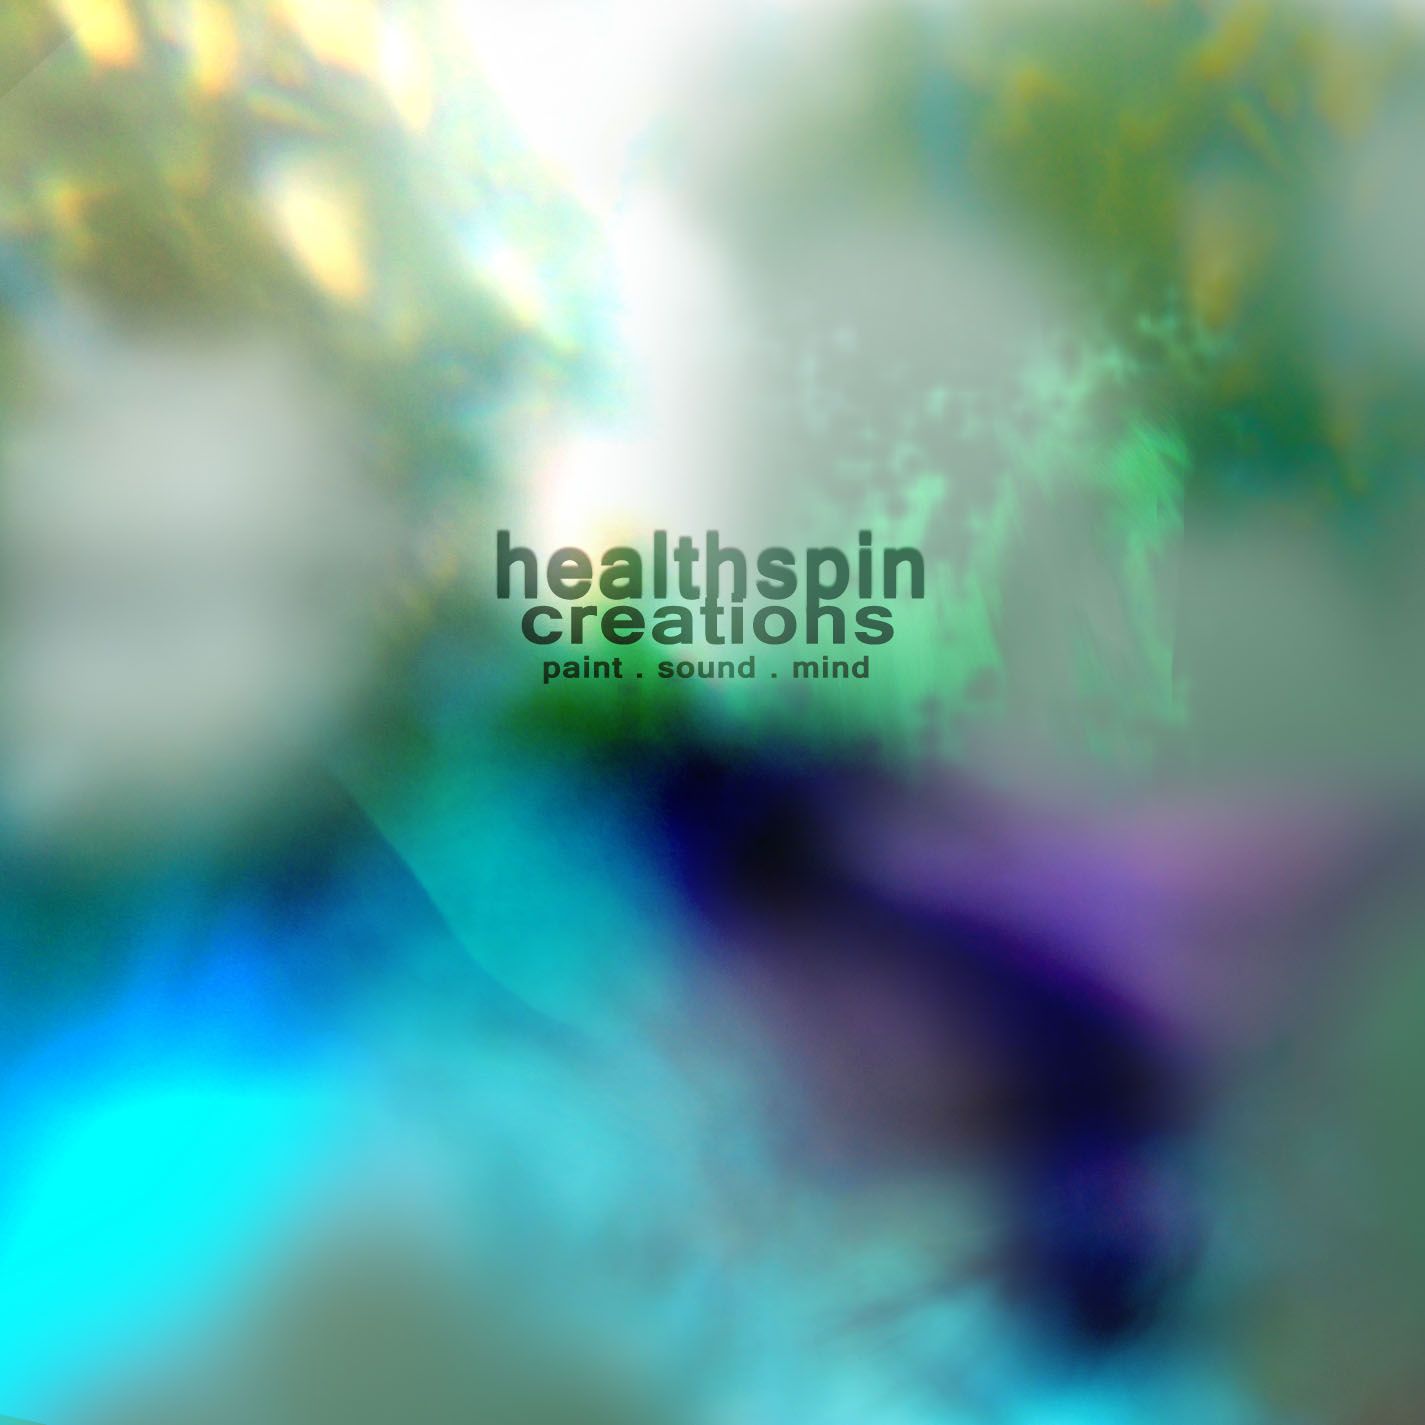 healthspin cover art.jpg